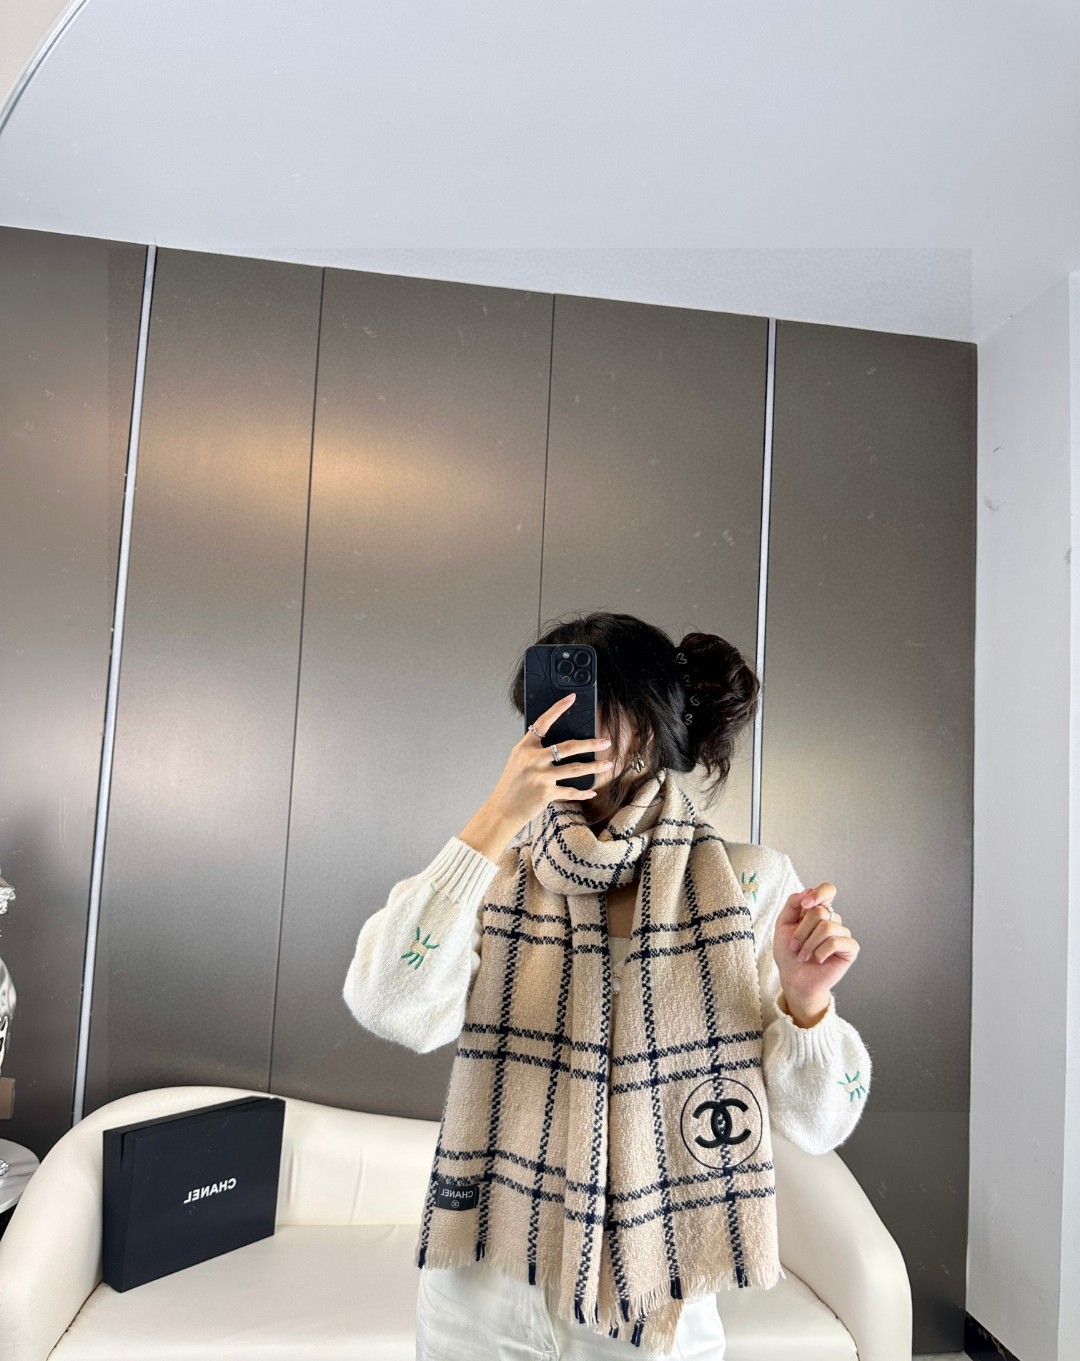 香奈儿新款韩剧女主风搭配大衣毛衣最佳此款系色调真的无敌经典了不是俗气的漂白就本色调带点米的高级配色百分百